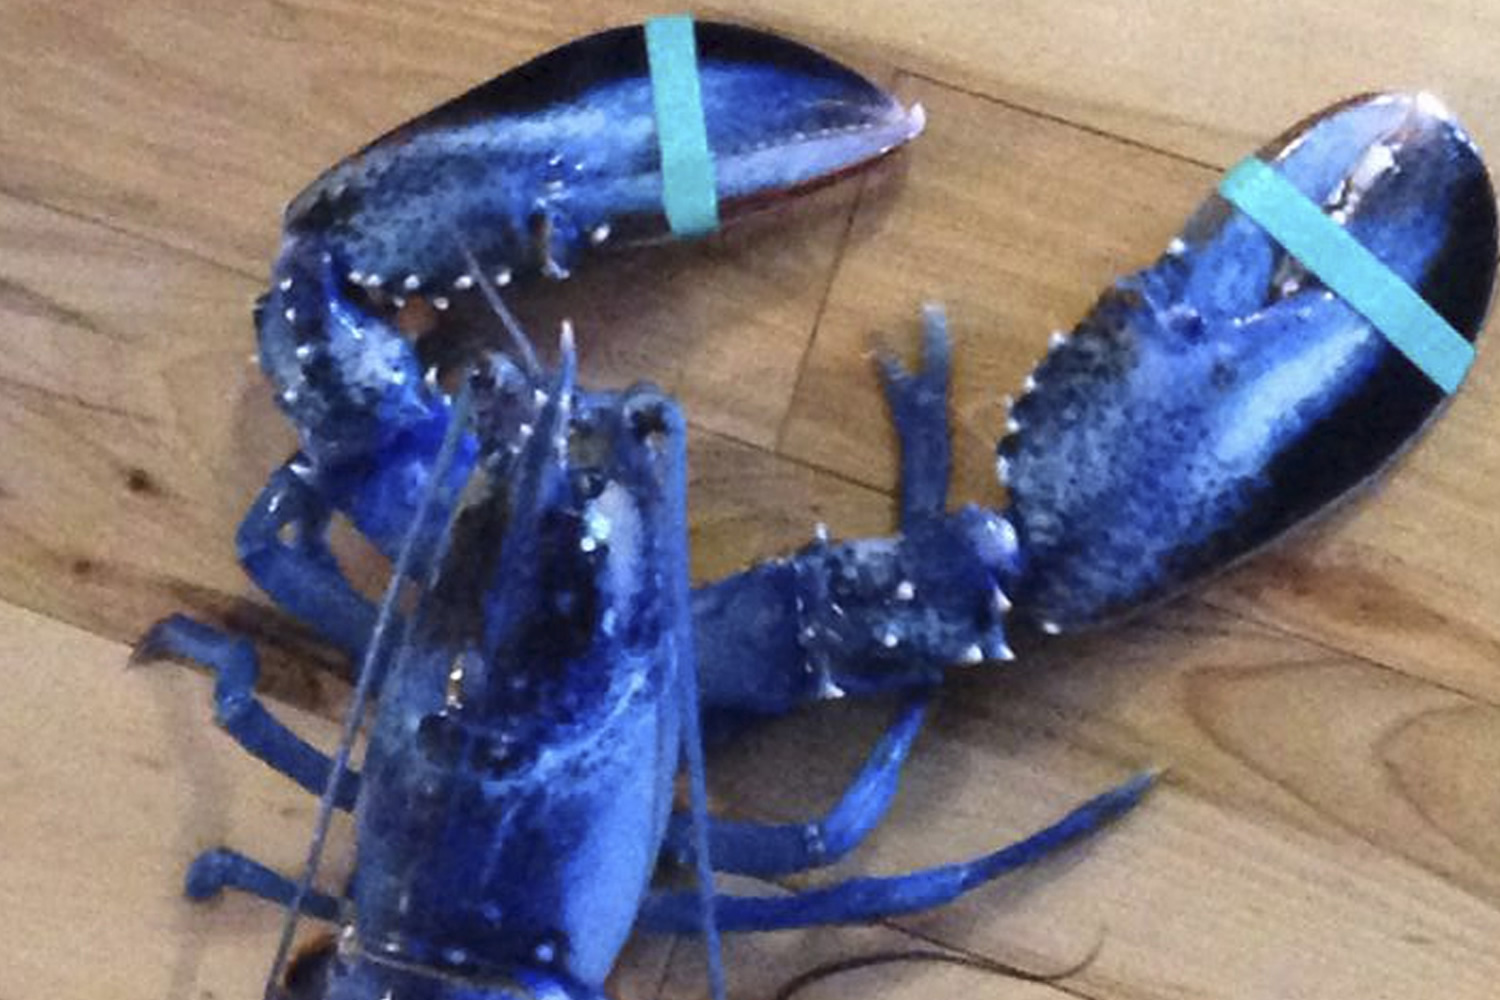 Capturan en Maine una extraña langosta de intenso color azul